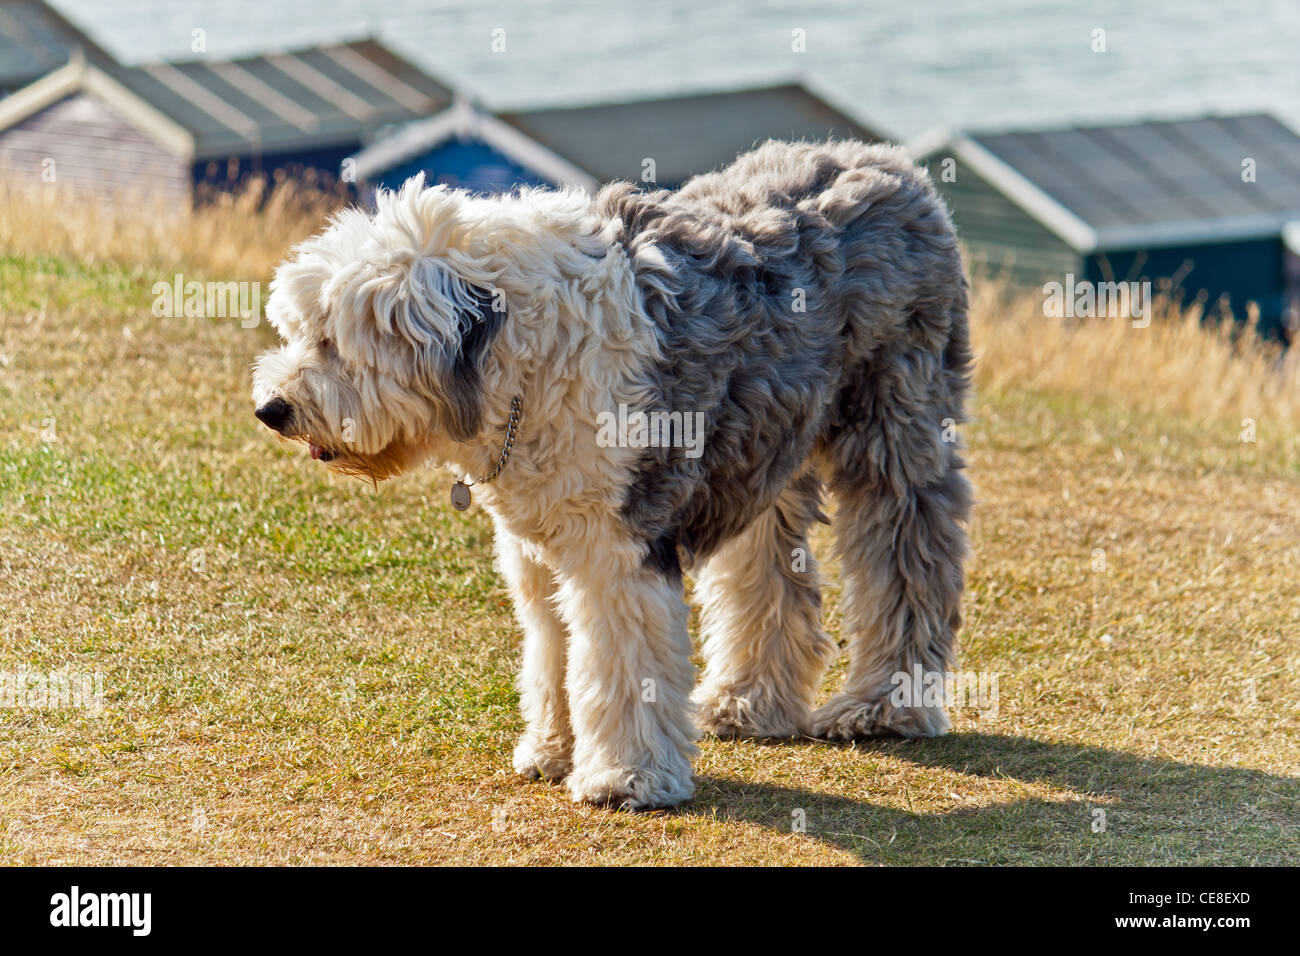 Un vieux, vieux chien de berger anglais et des cabines de plage à l'avant, Tankerton de Whitstable, Kent, UK. Banque D'Images